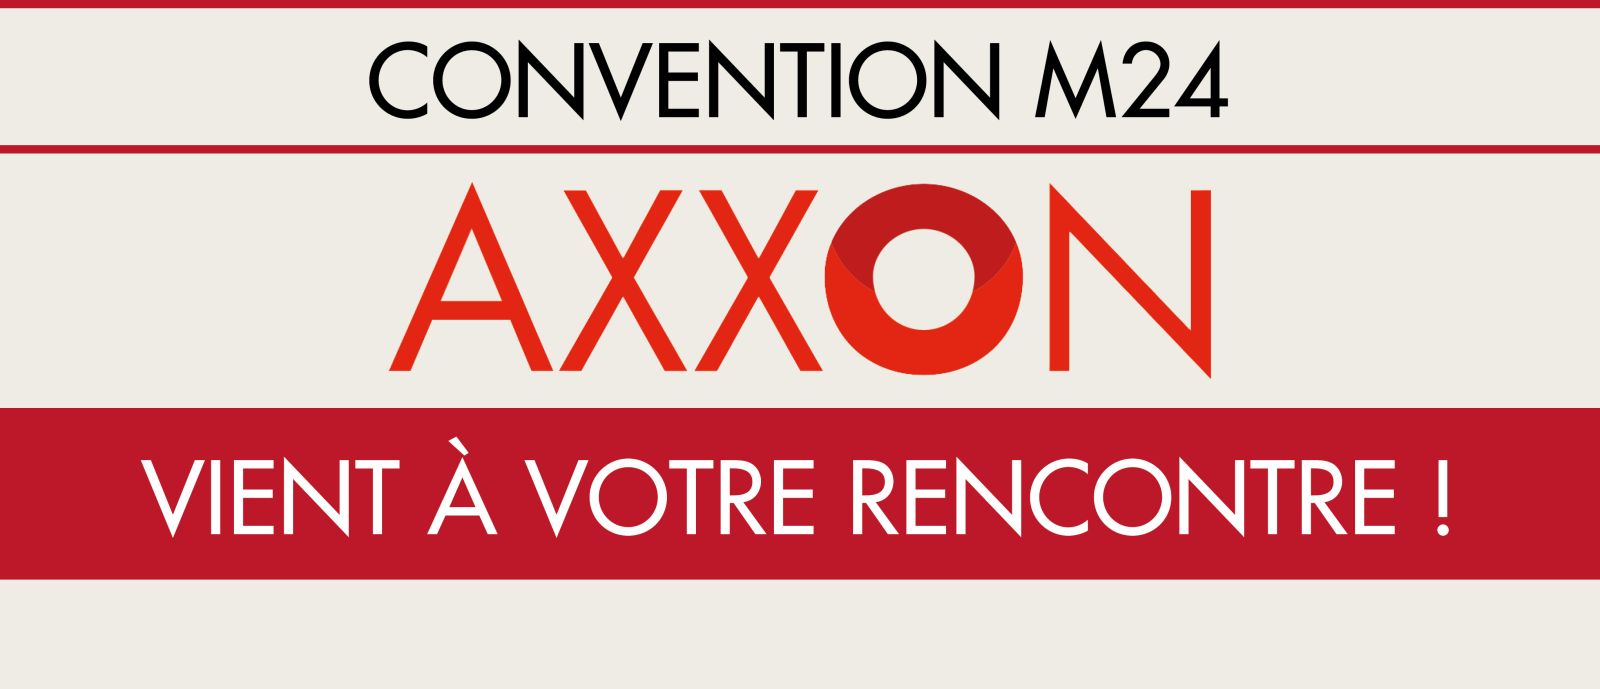 Convention M24 : AXXON vient à votre rencontre